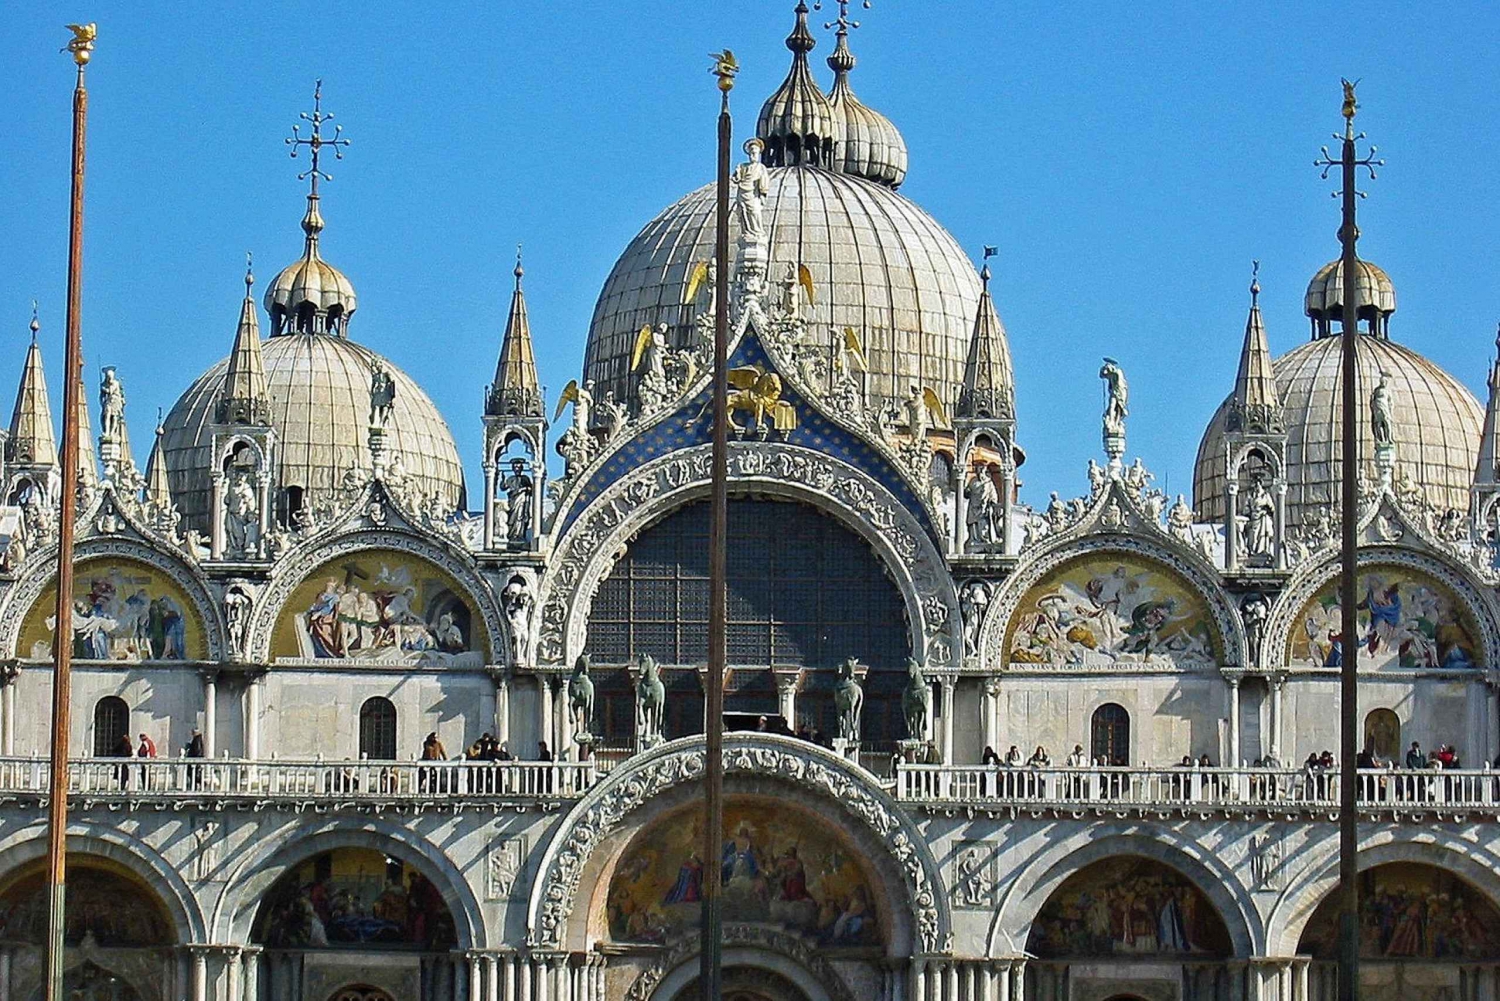 Public Venice: St Mark's Basilica Tour